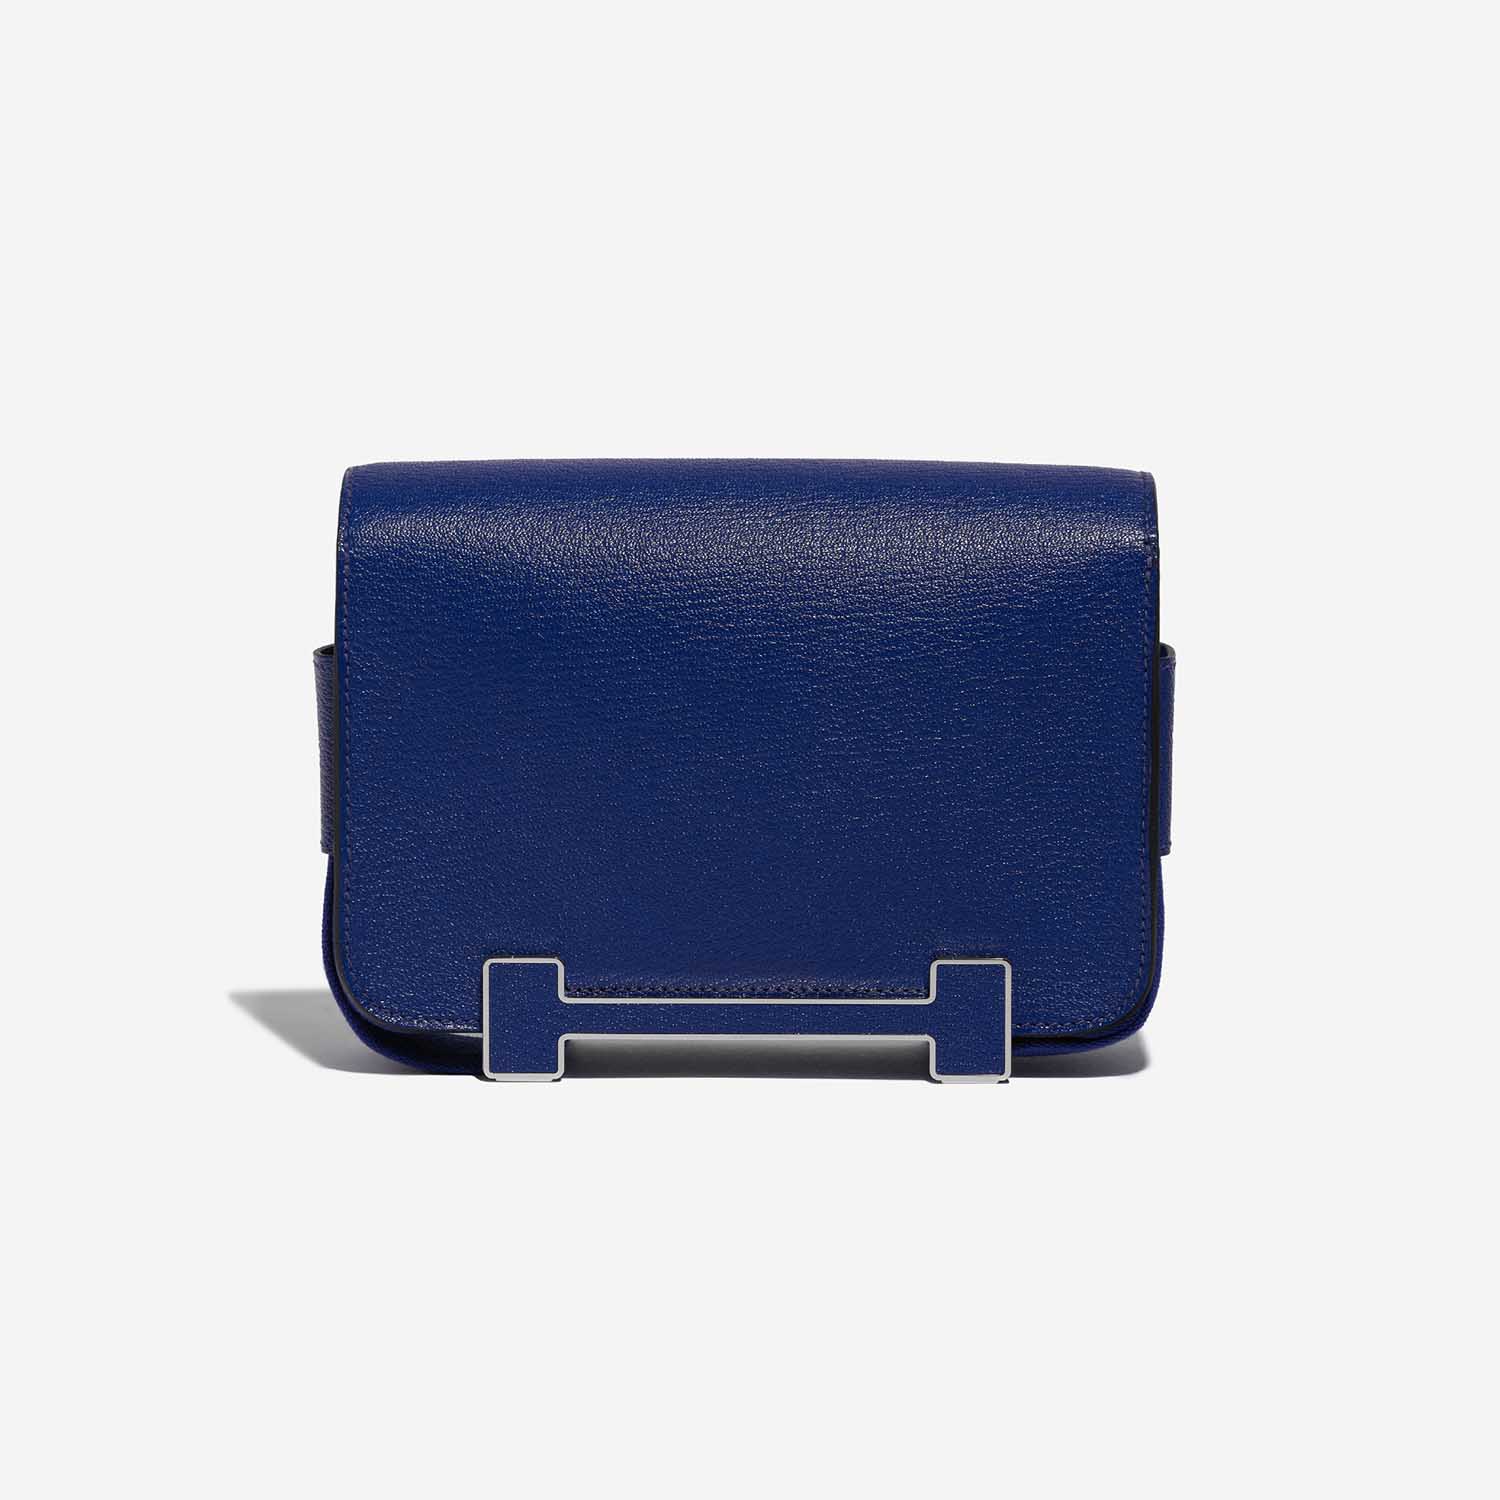 Gebrauchte Hermès Tasche Geta 21 Chevre Mysore Blue Electrique Blue | Verkaufen Sie Ihre Designer-Tasche auf Saclab.com